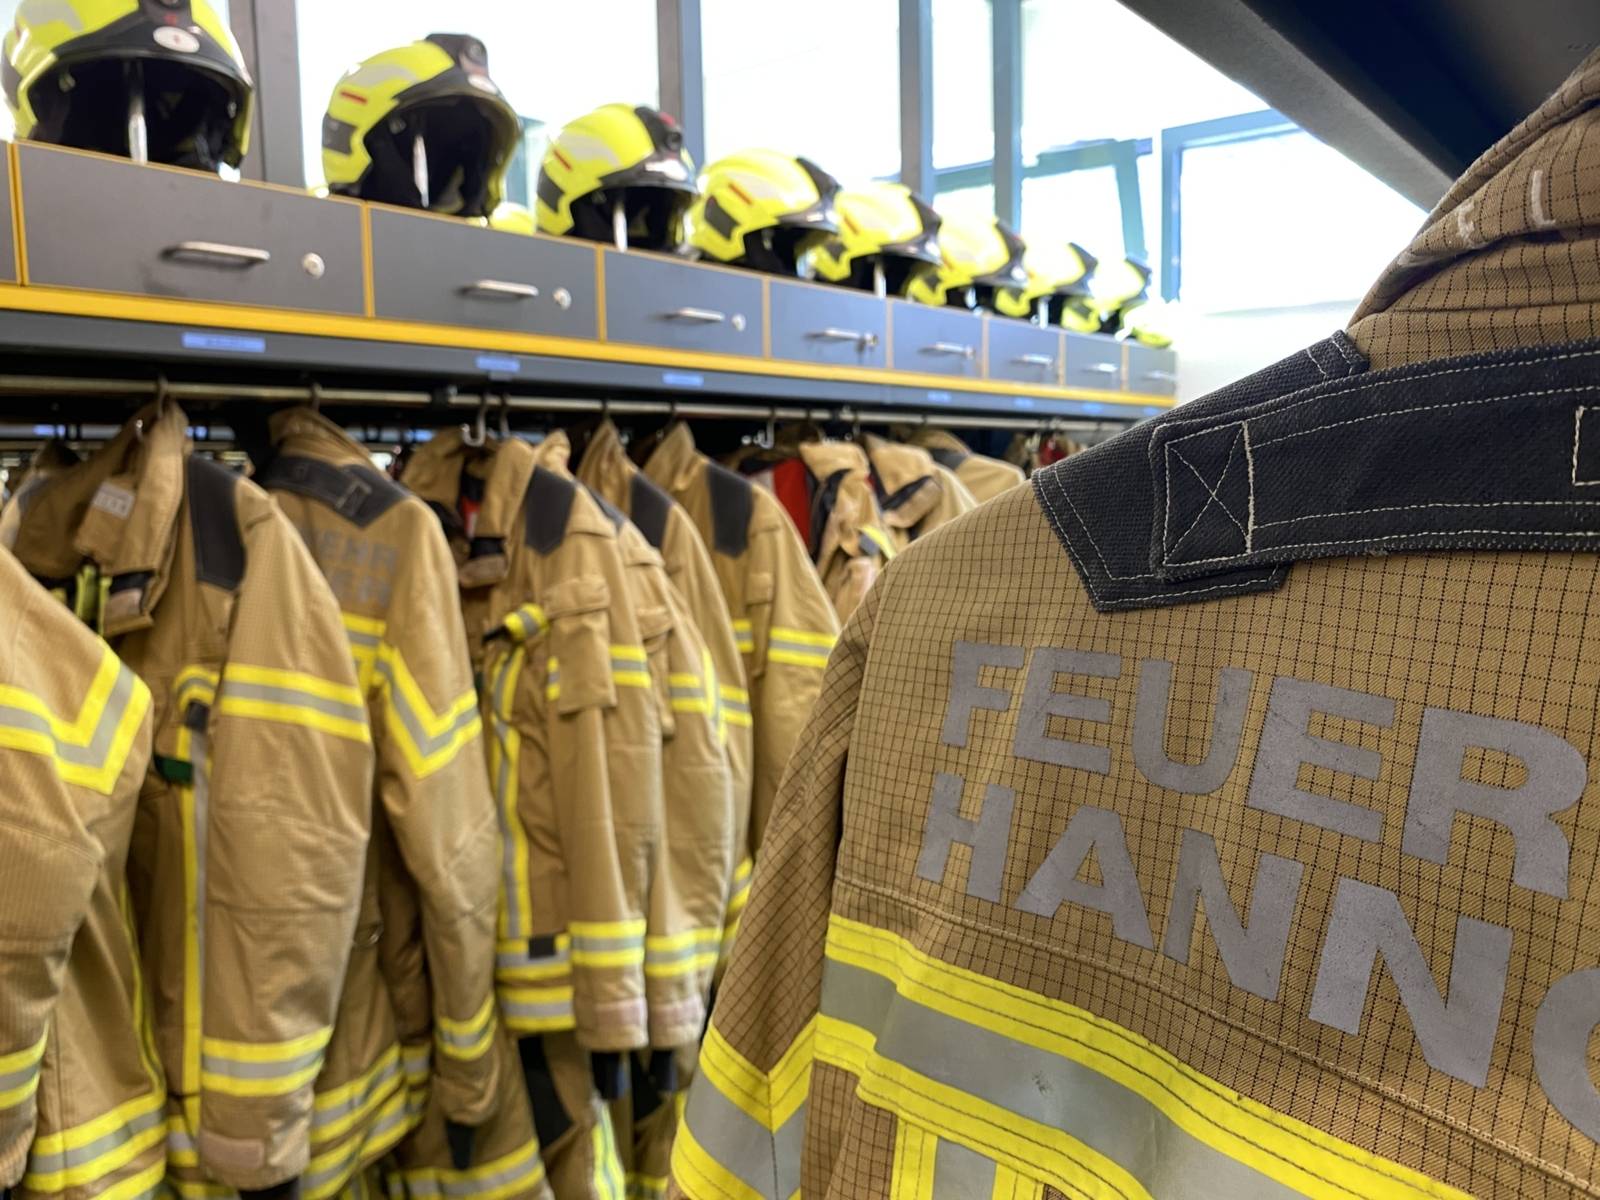 Helme und Jacken der Feuerwehr Hannover